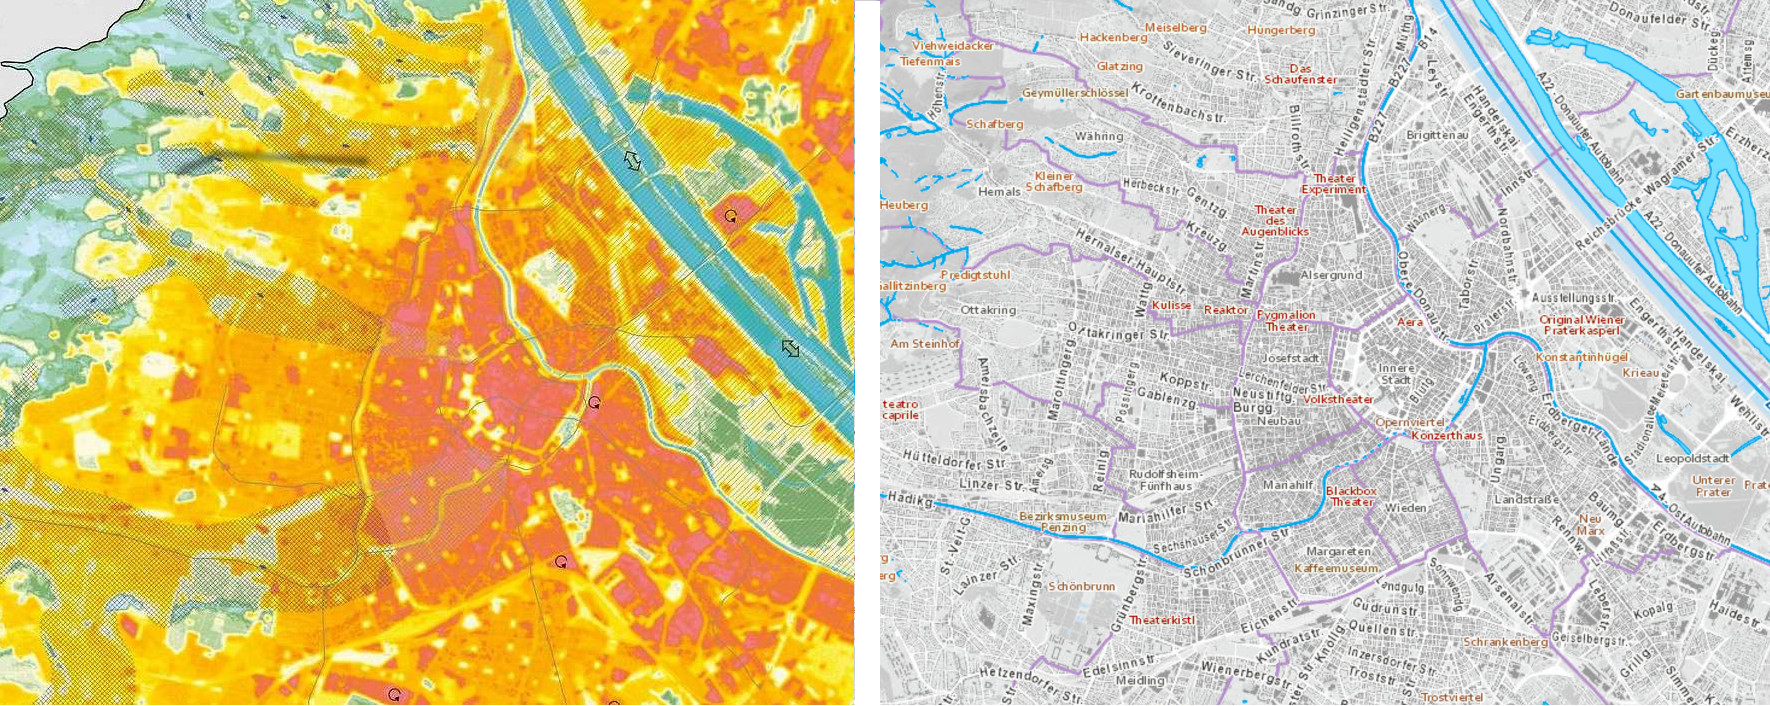 Klima- und Gewässerkarte nebeneinander gestellt. In der linken, thermischen Karte sollte eigentlich eine blaue Linie den kühlen Wienfluss anzeigen – stattdessen sehen wir dort gelb-rote Hitzeinseln. Einzig der Stadtpark mit seinen Bäumen und Gewässern ist grün und blau. Rechts ein ähnlicher Ausschnitt aus der Gewässerkarte, welcher die Lage des auf Klimaanalysekarten »verschwunden« Wienflusses zeigt.